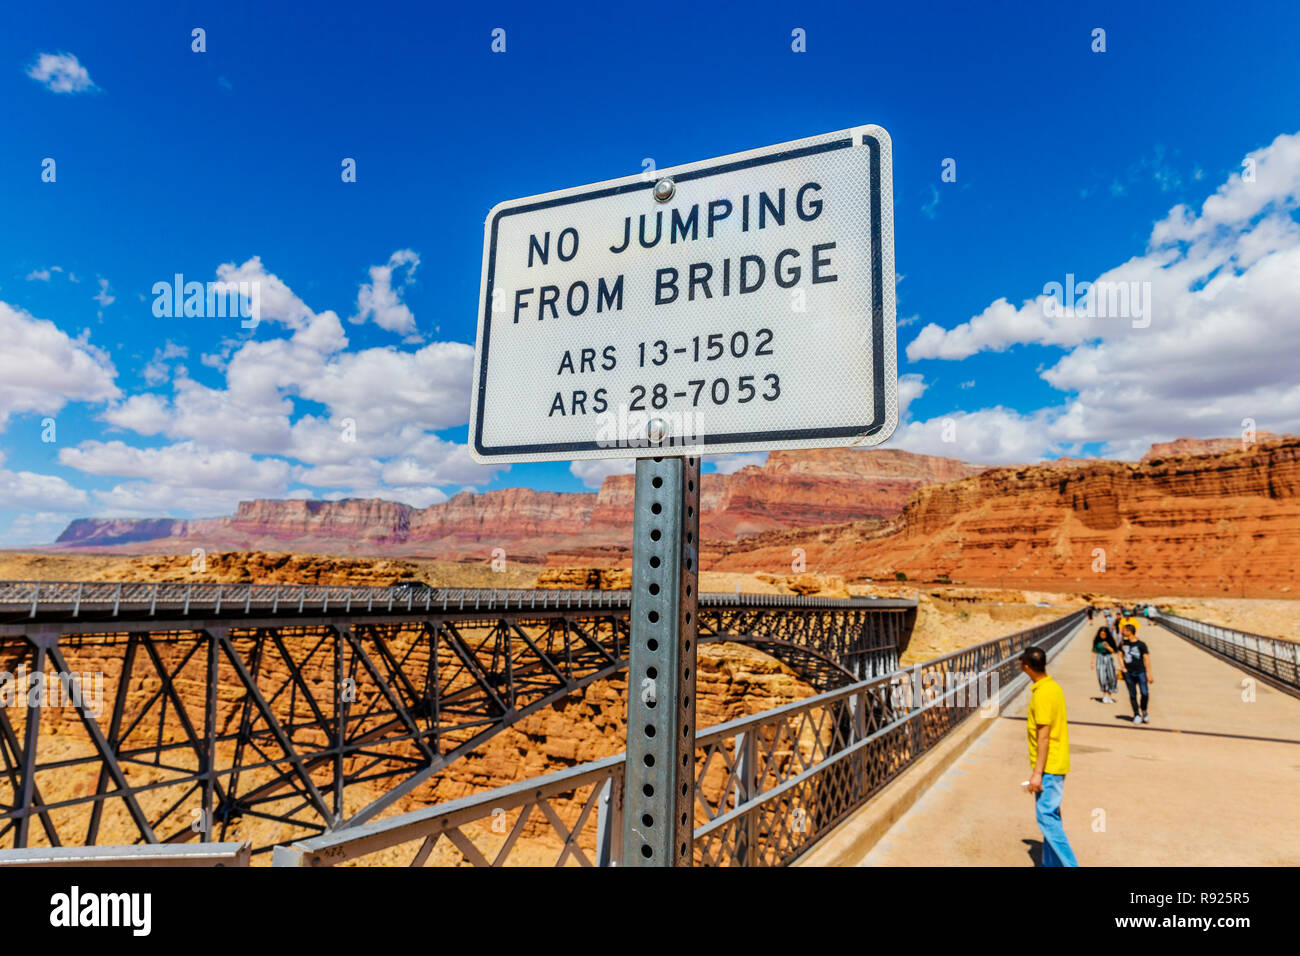 Navajo Bridge è una coppia di acciaio spandrel arch ponti che attraversano il fiume Colorado vicino a Lees Ferry in Northern Arizona. Il ponte più recente della coppia Foto Stock